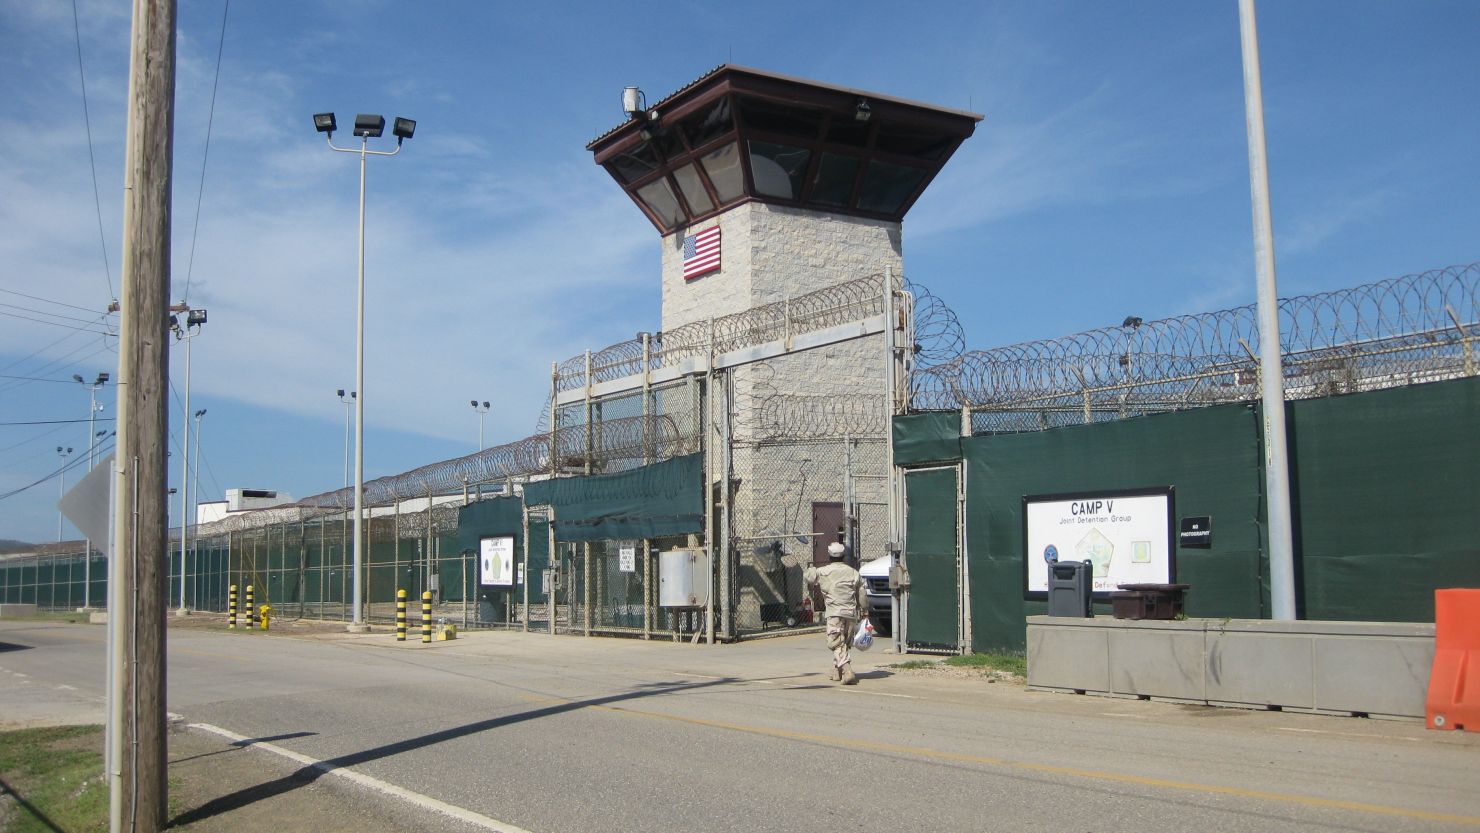  The U.S. prison at Guantanamo Bay, Cuba.